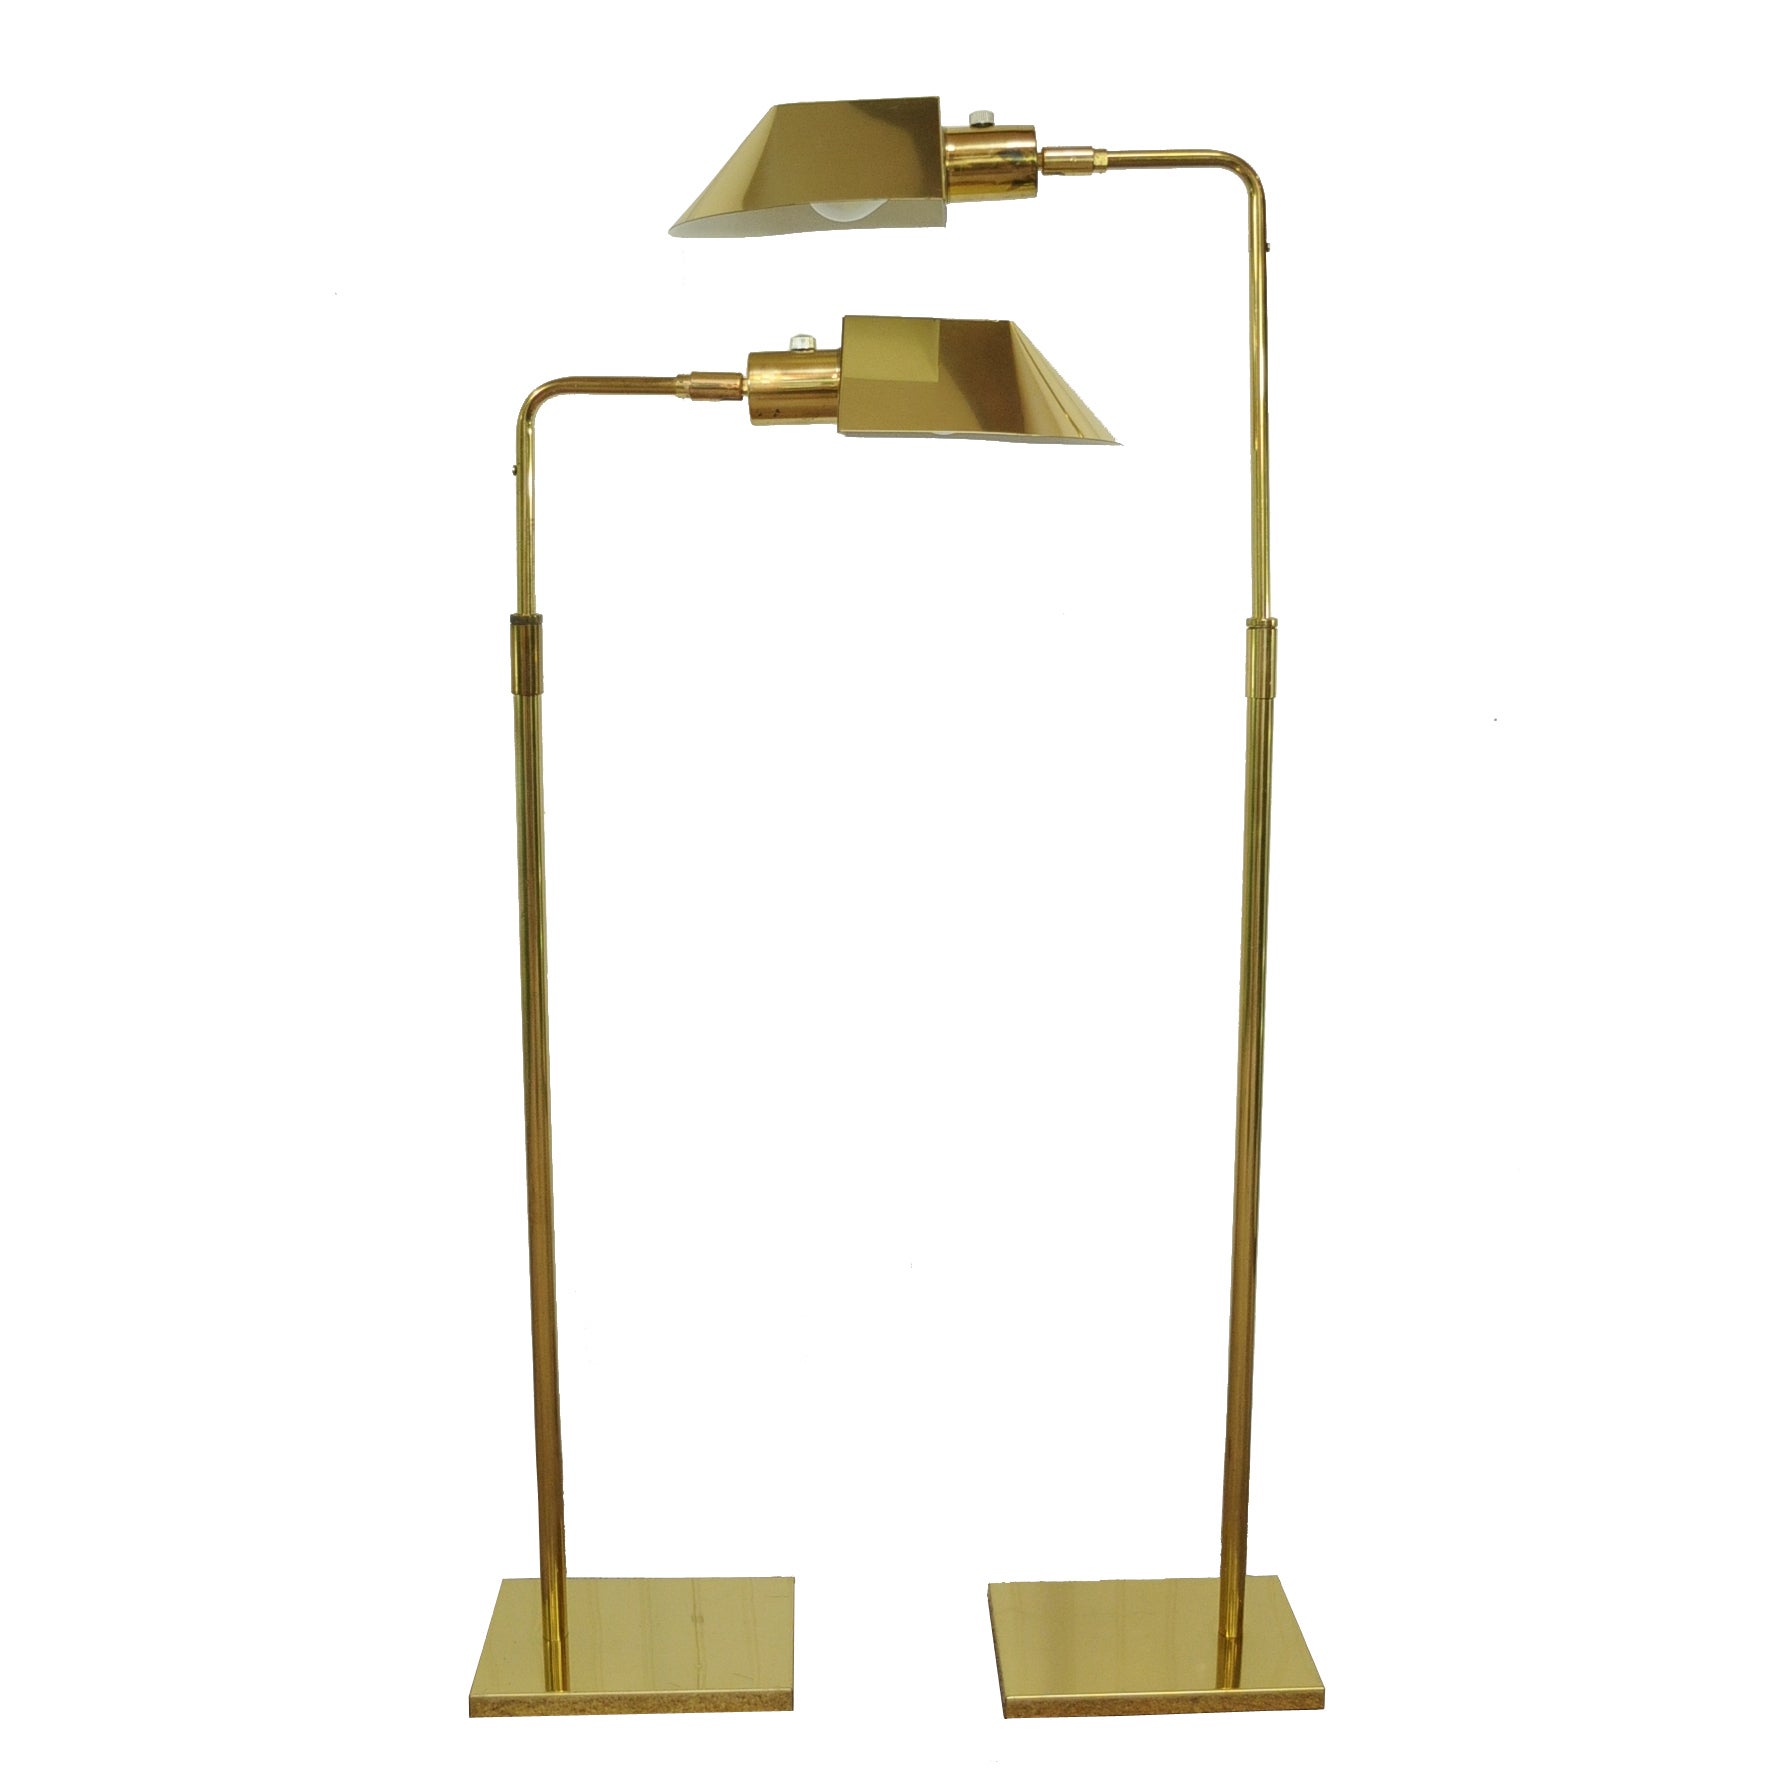 Vintage Pair of Koch & Lowy OMI Brass Adjustable Floor / Task Lamps